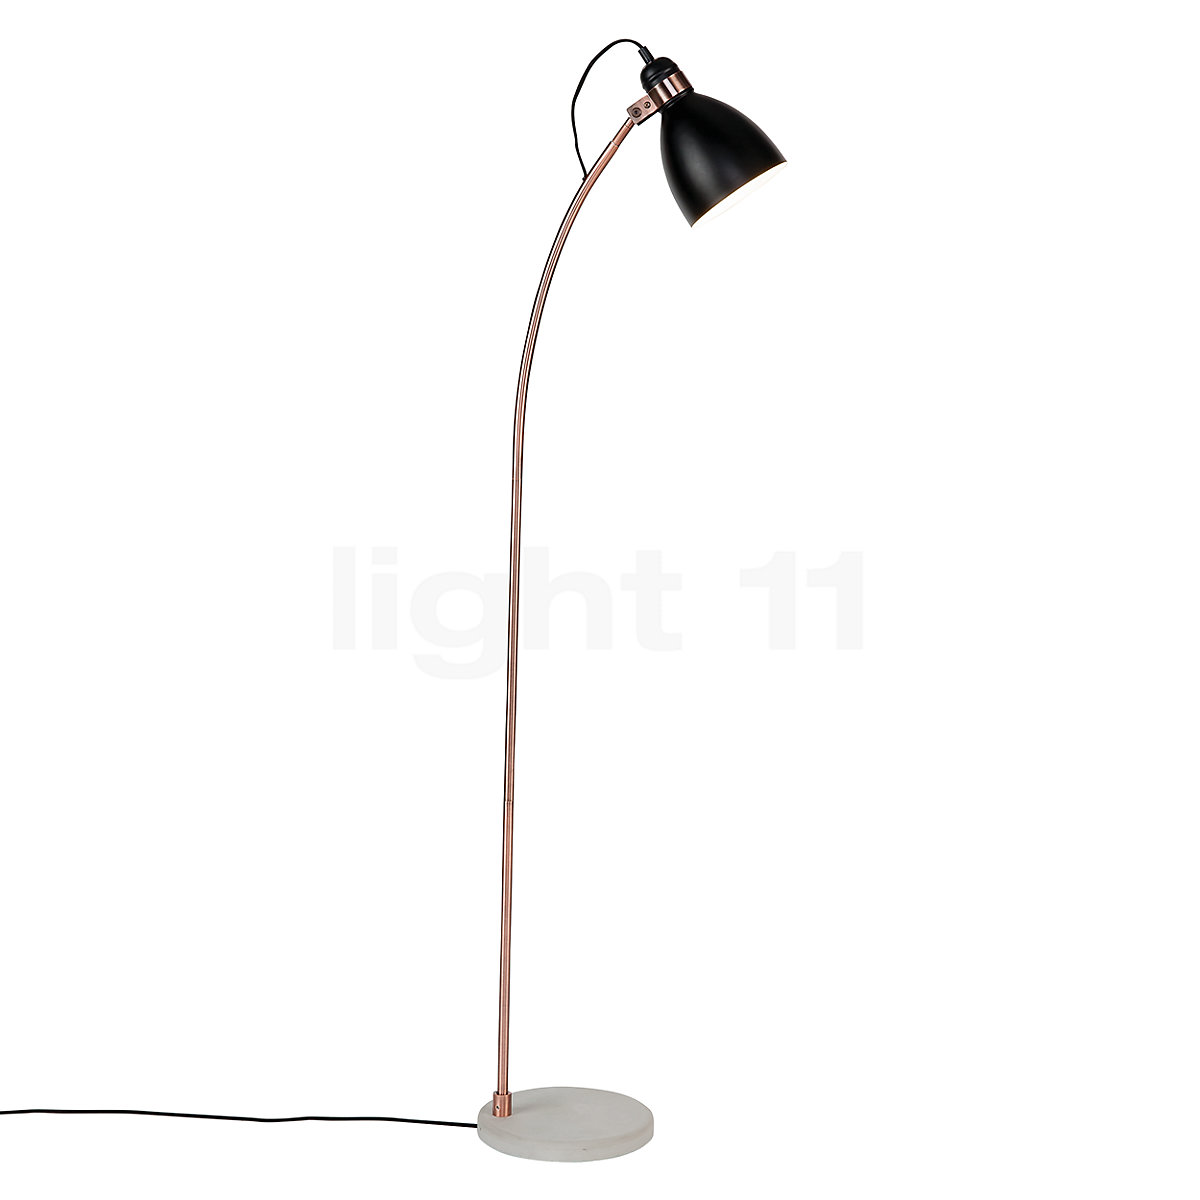 in het geheim stimuleren buitenspiegel Buy It's about RoMi Denver Floor Lamp at light11.eu